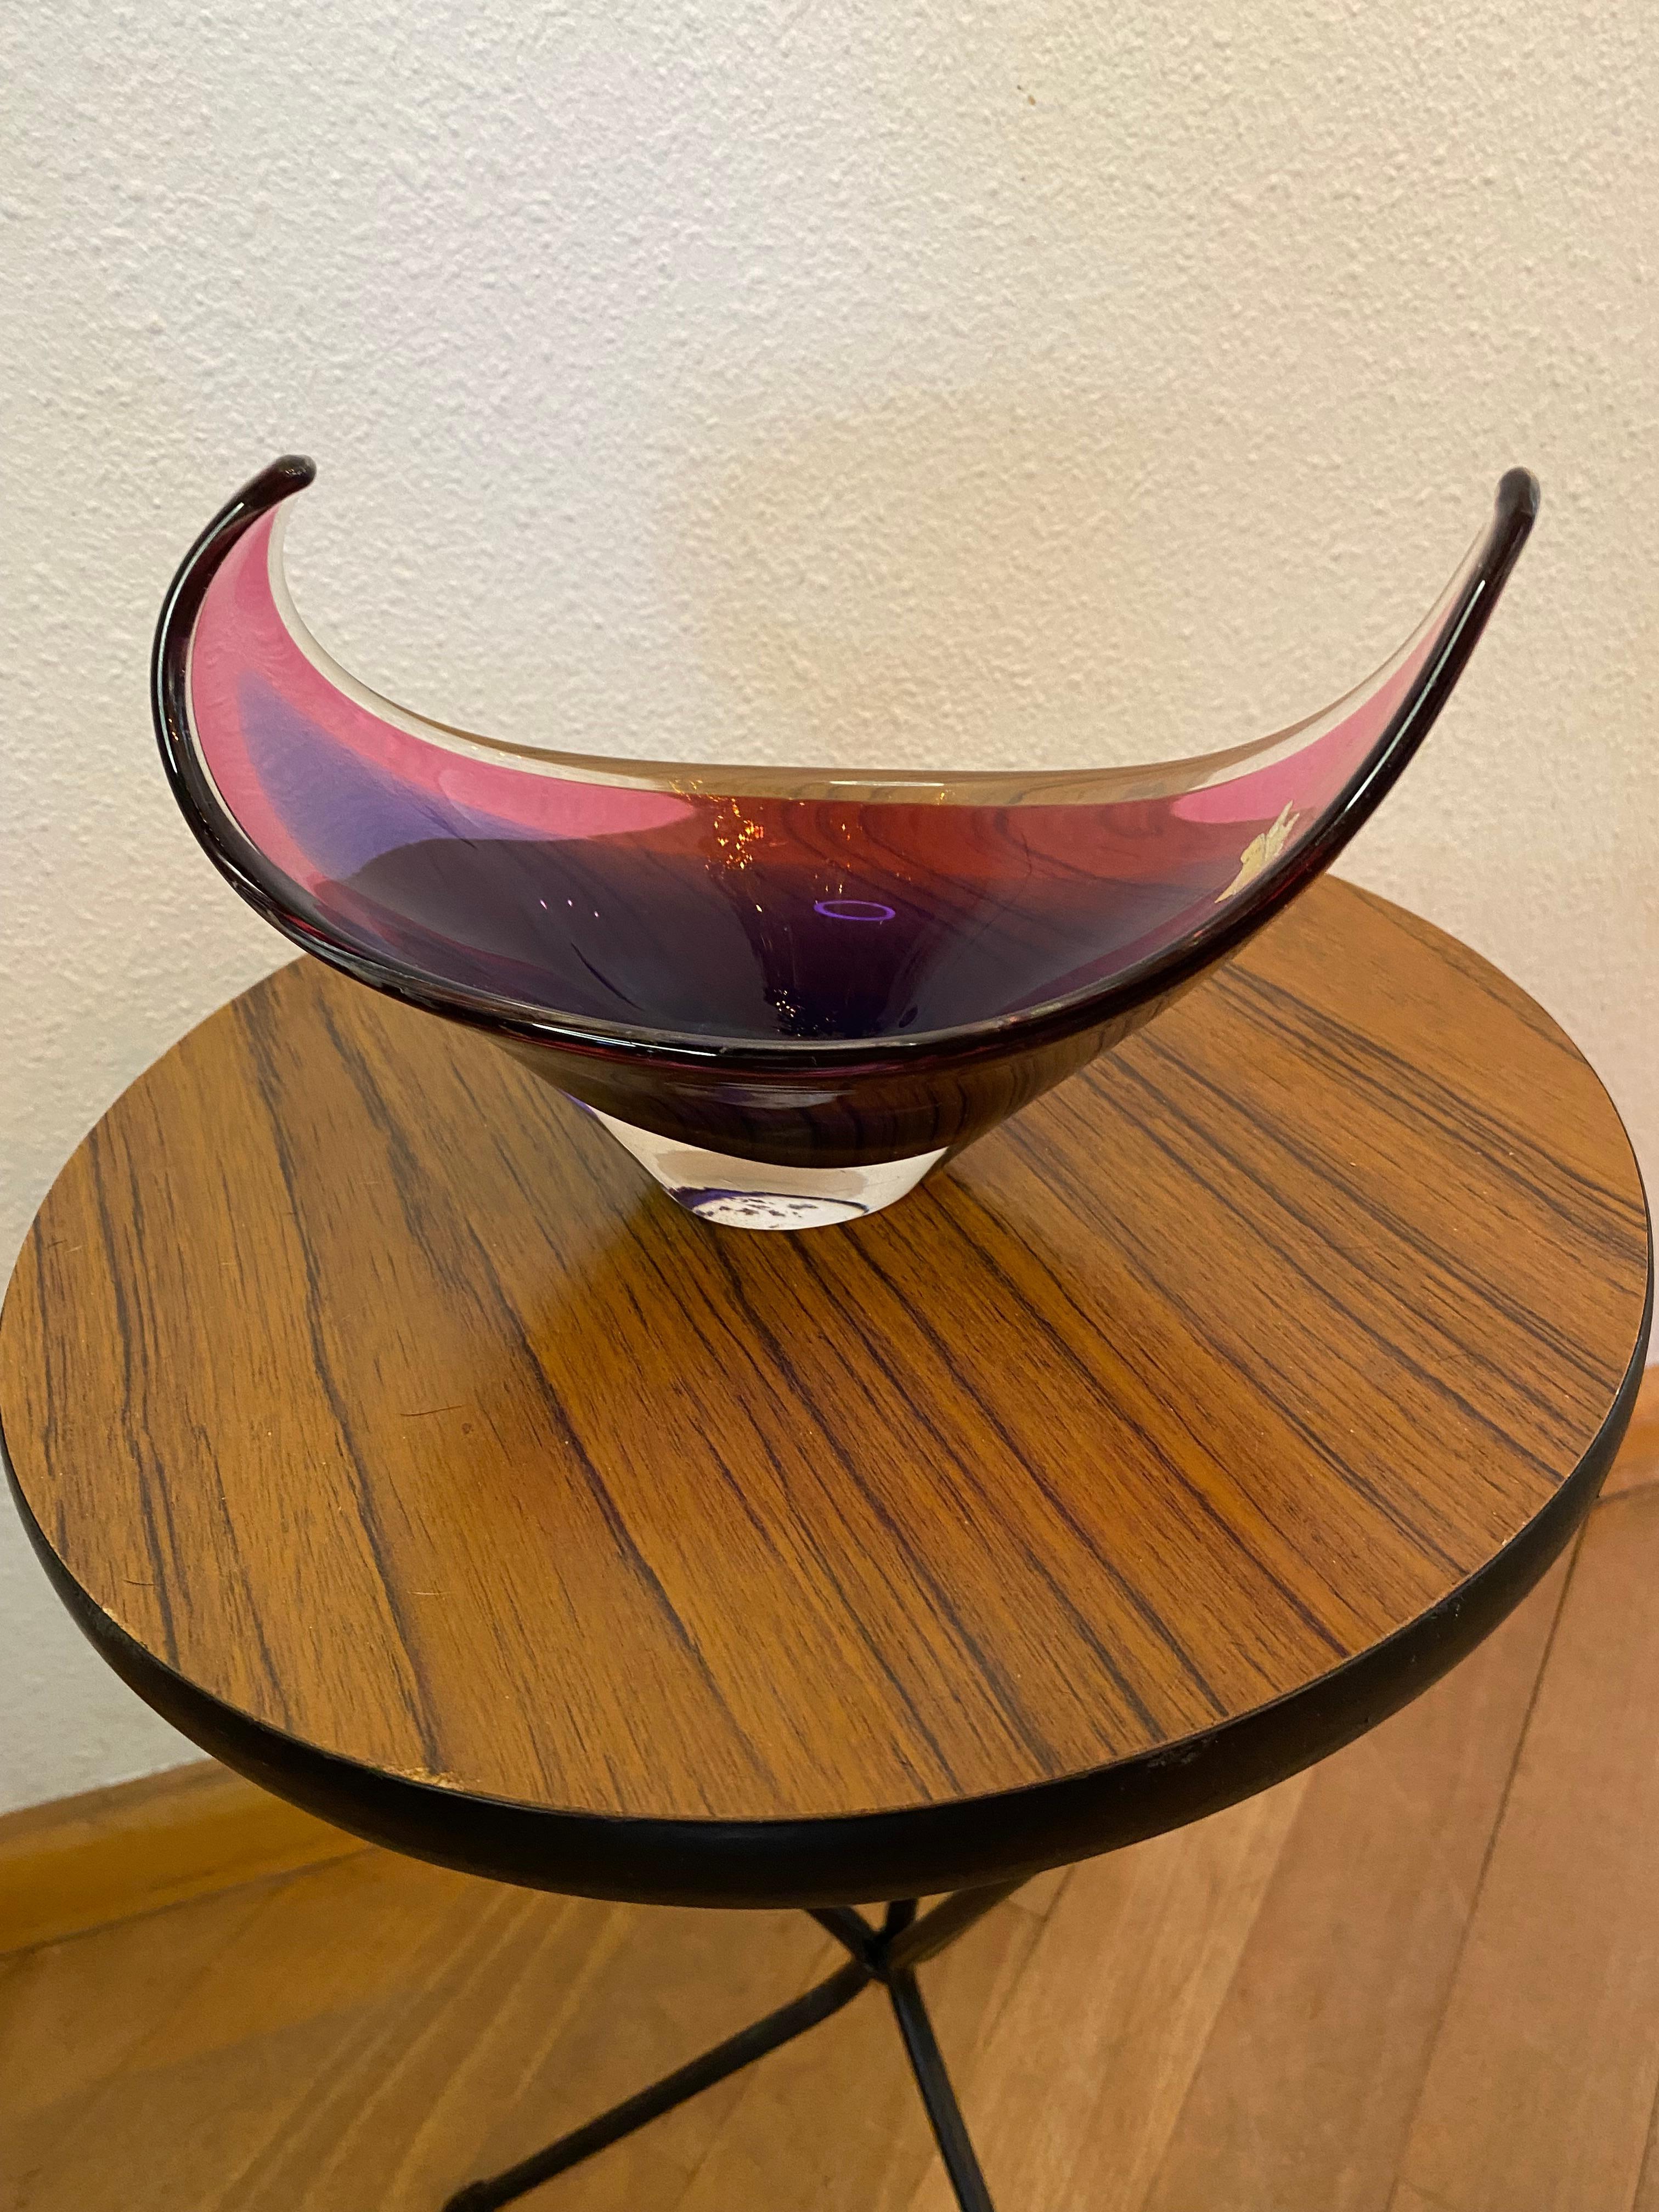 Superbe petit bol en verre de Murano coloré en deux tons de violet dans une belle forme élégante.